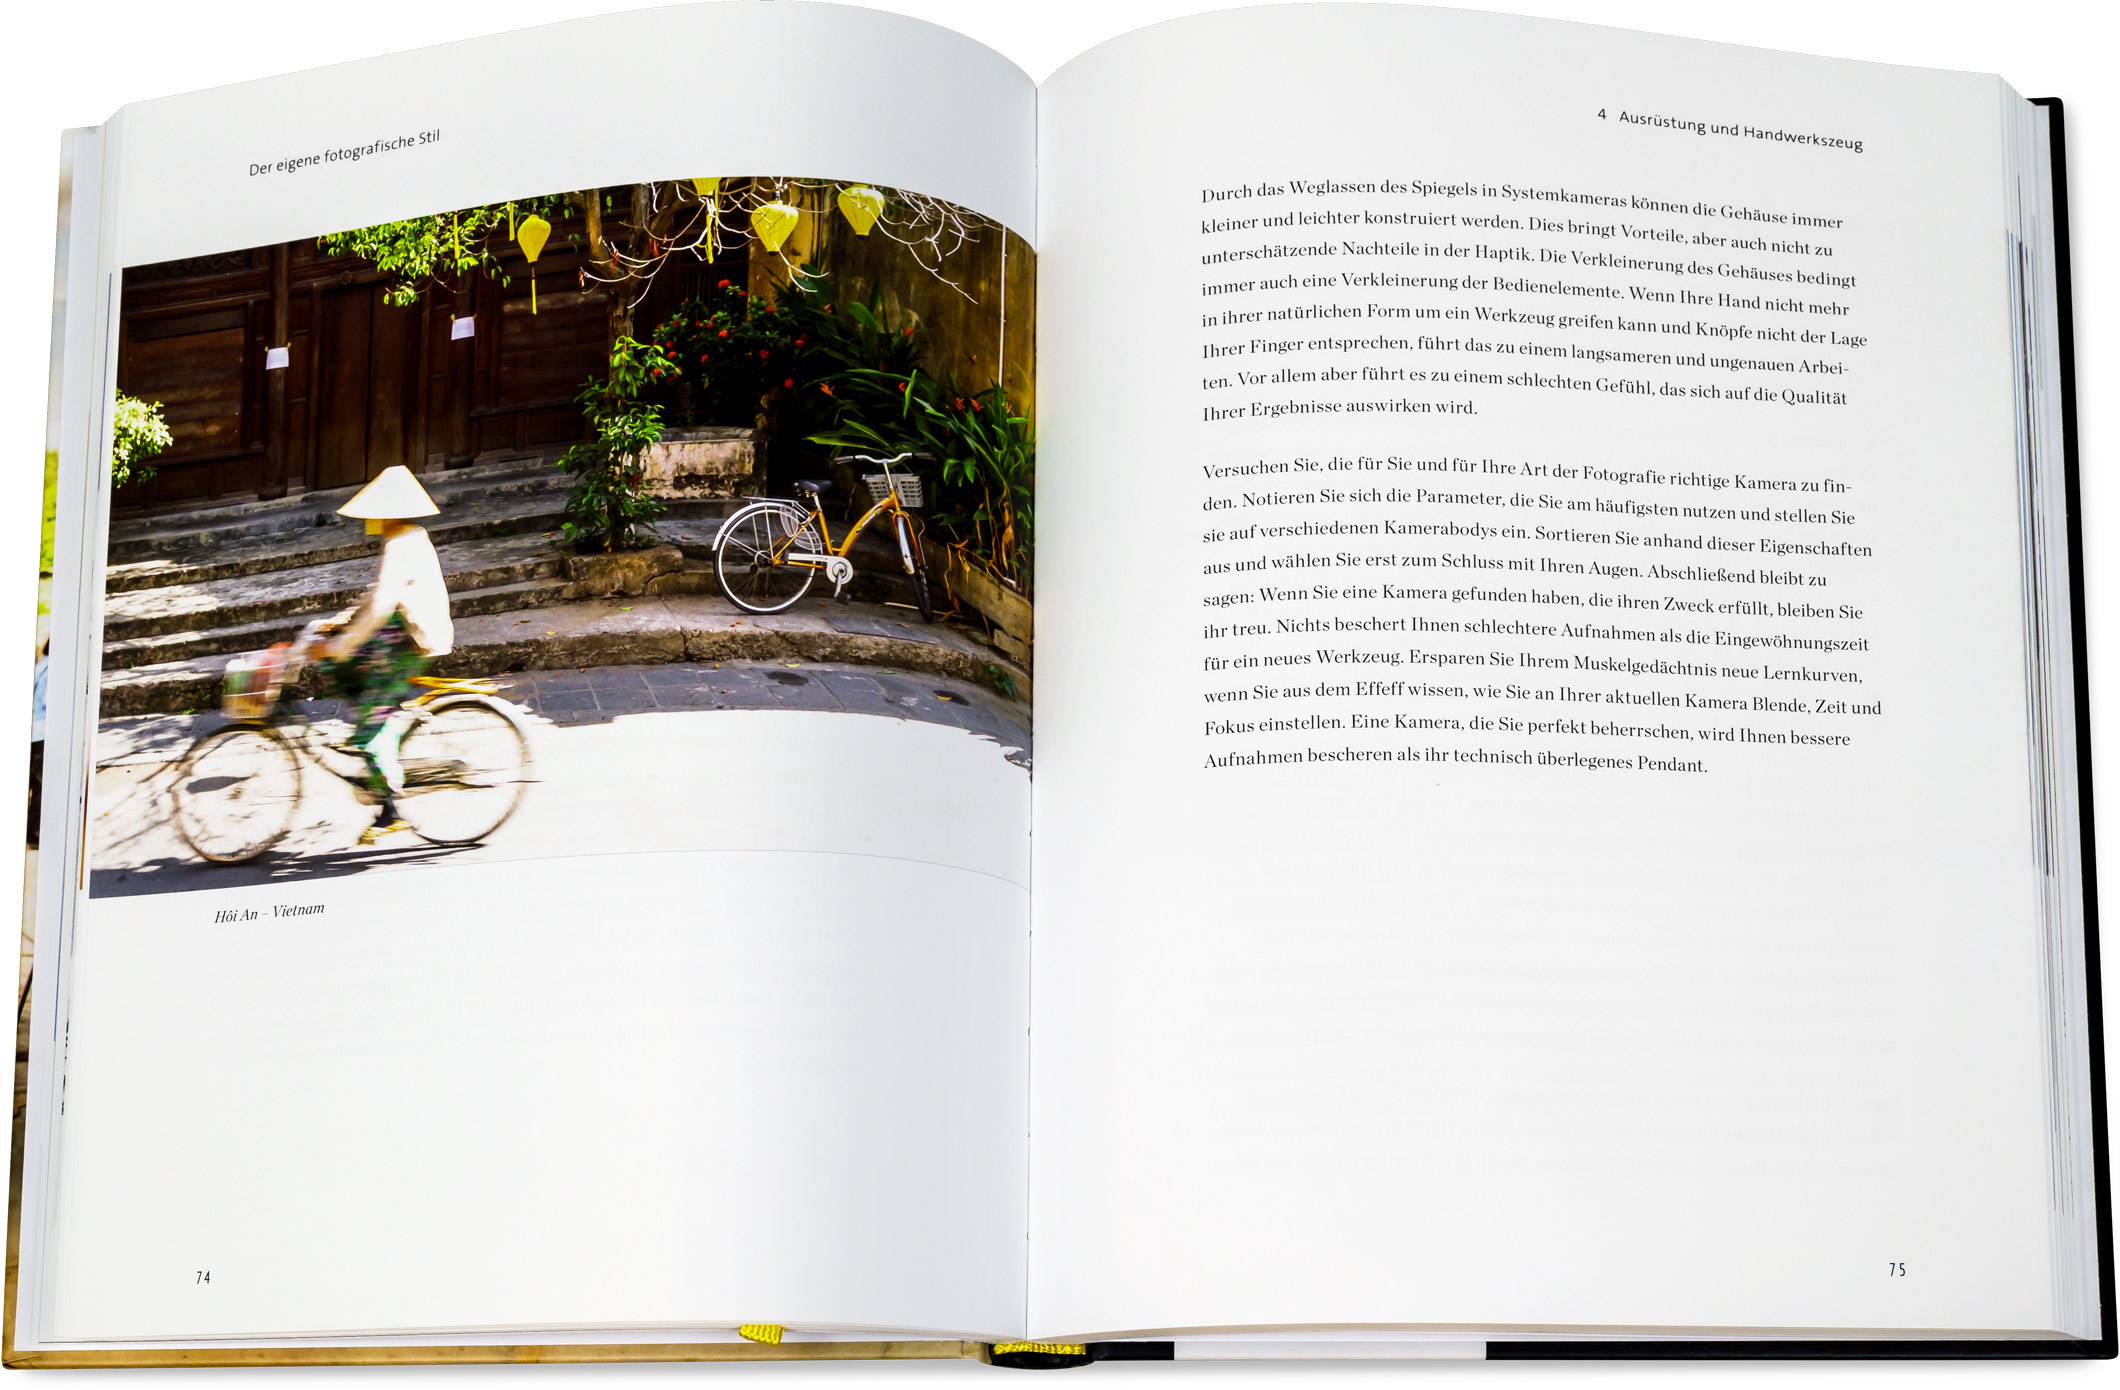 Blick ins Buch: Der eigene fotografische Stil